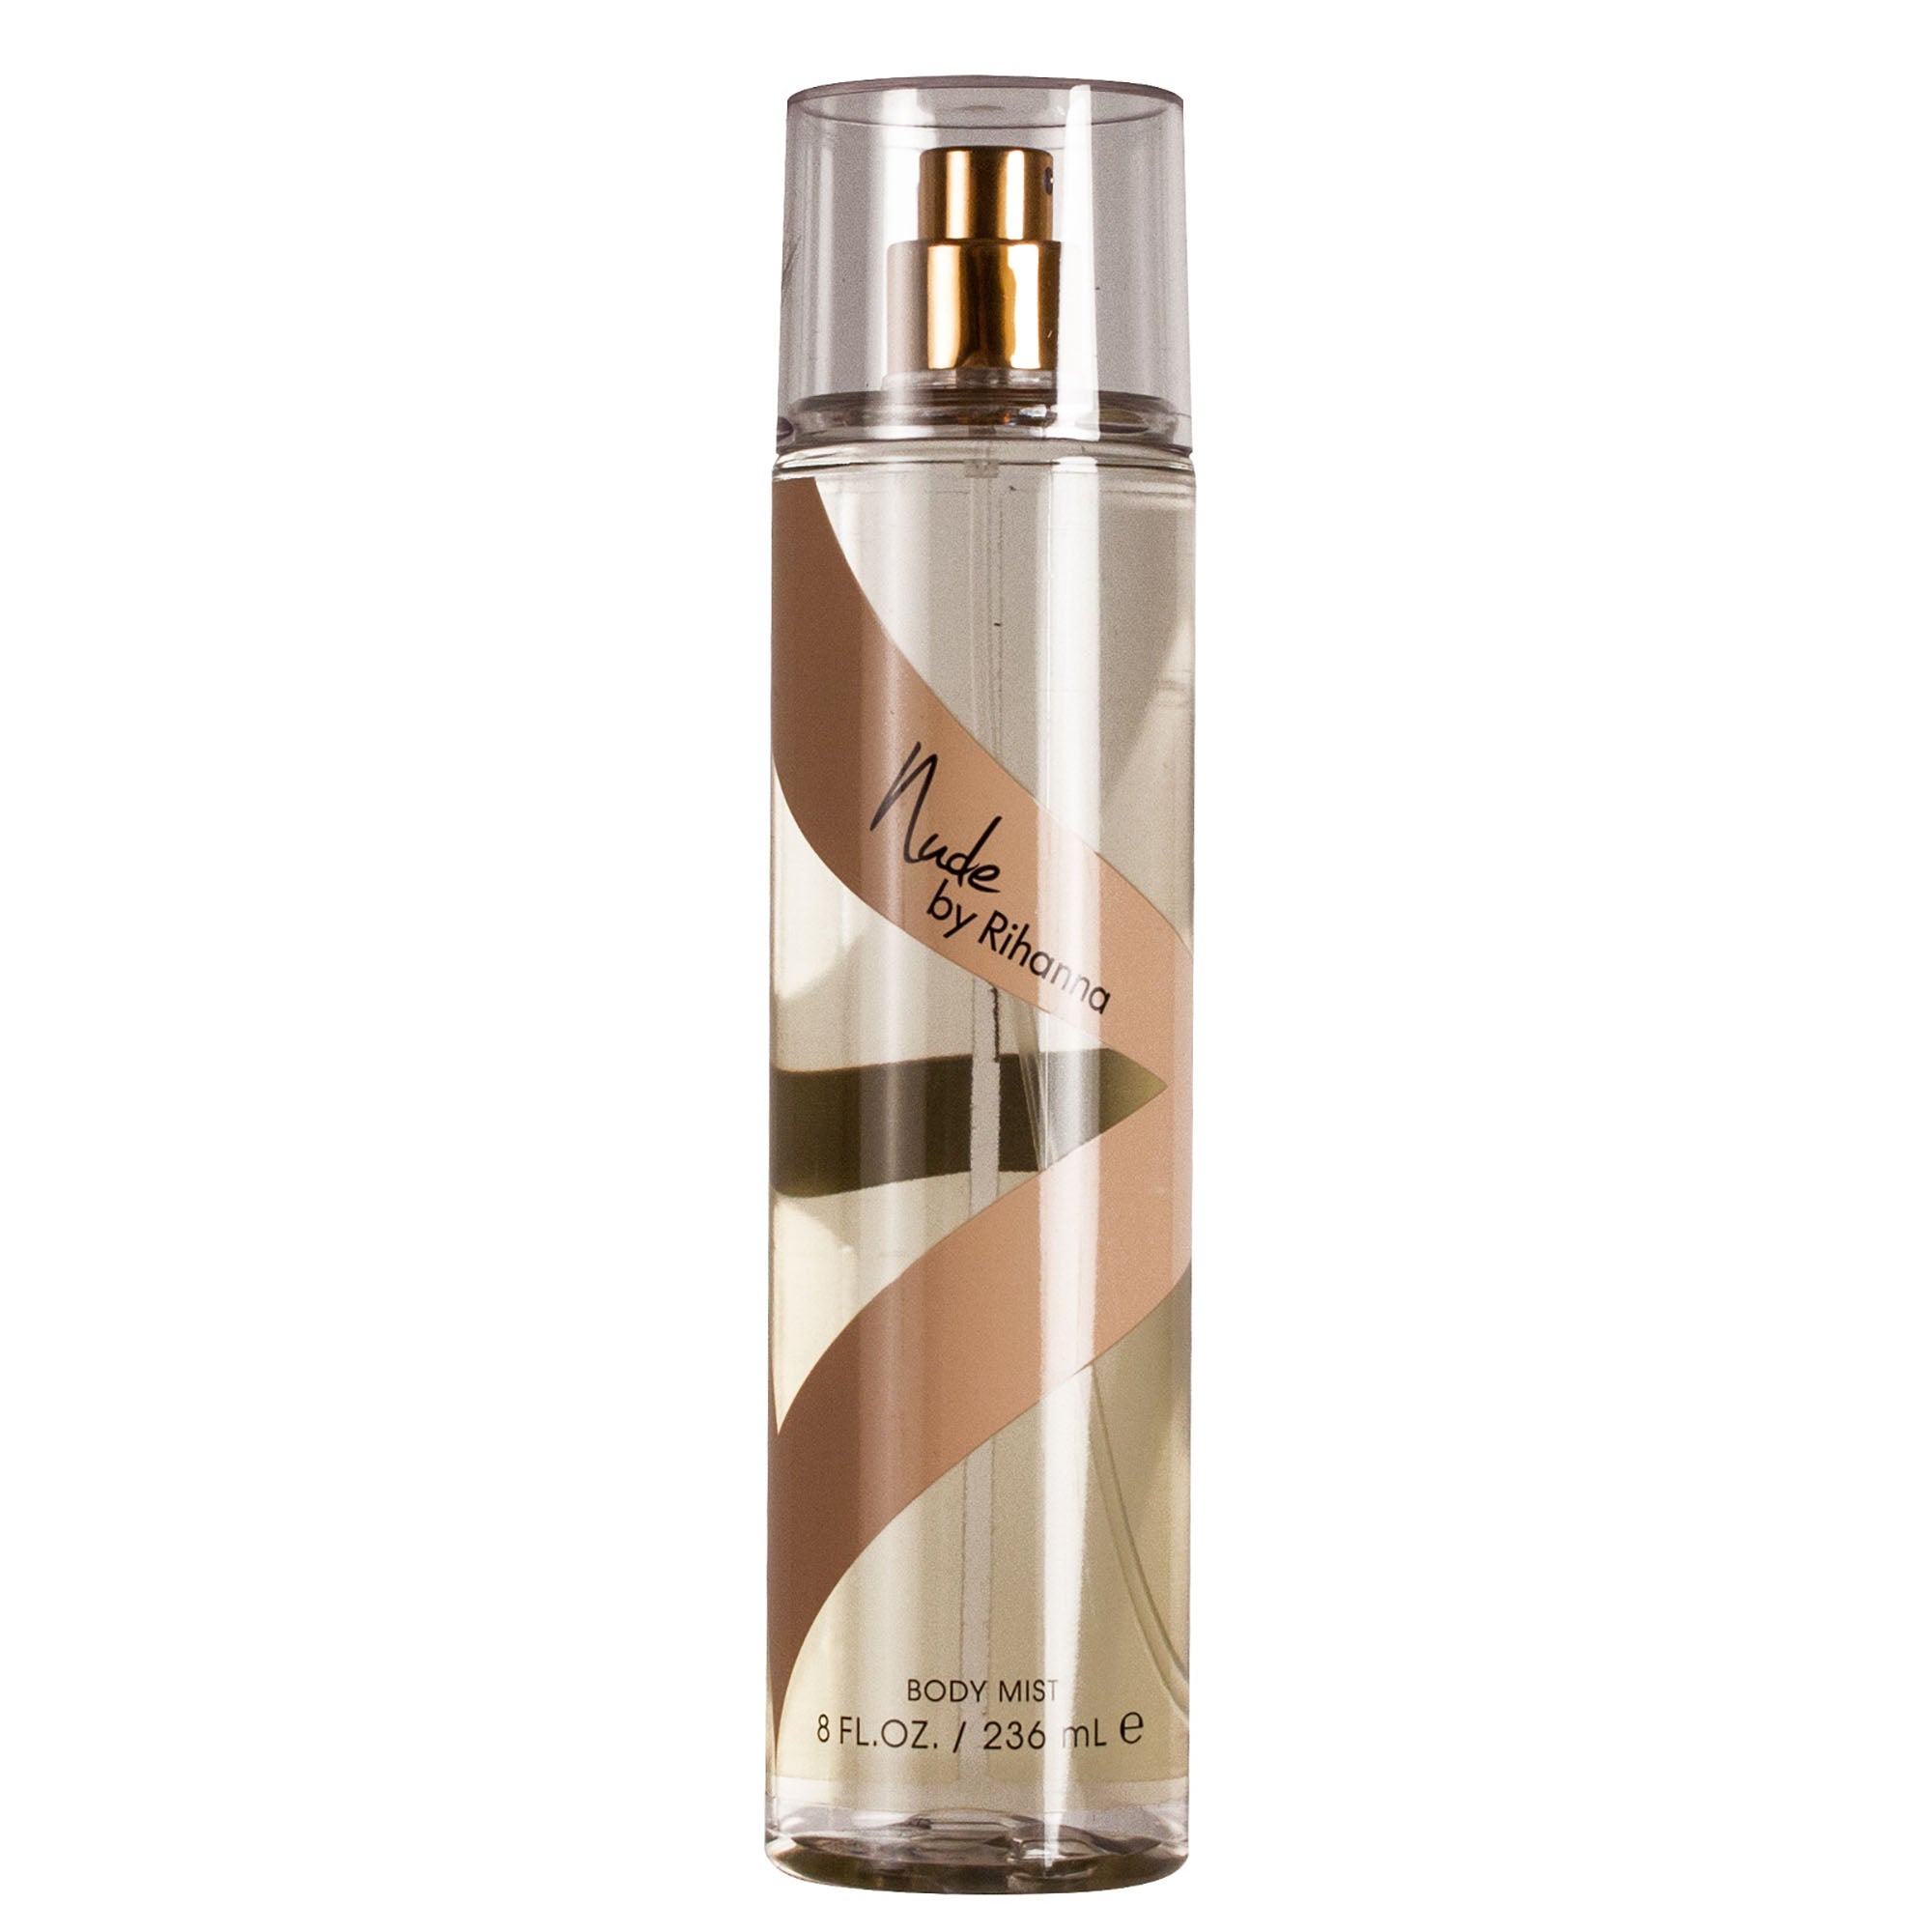 FRAG - Rihanna Nude Fragrance Mist 8 oz (236mL)